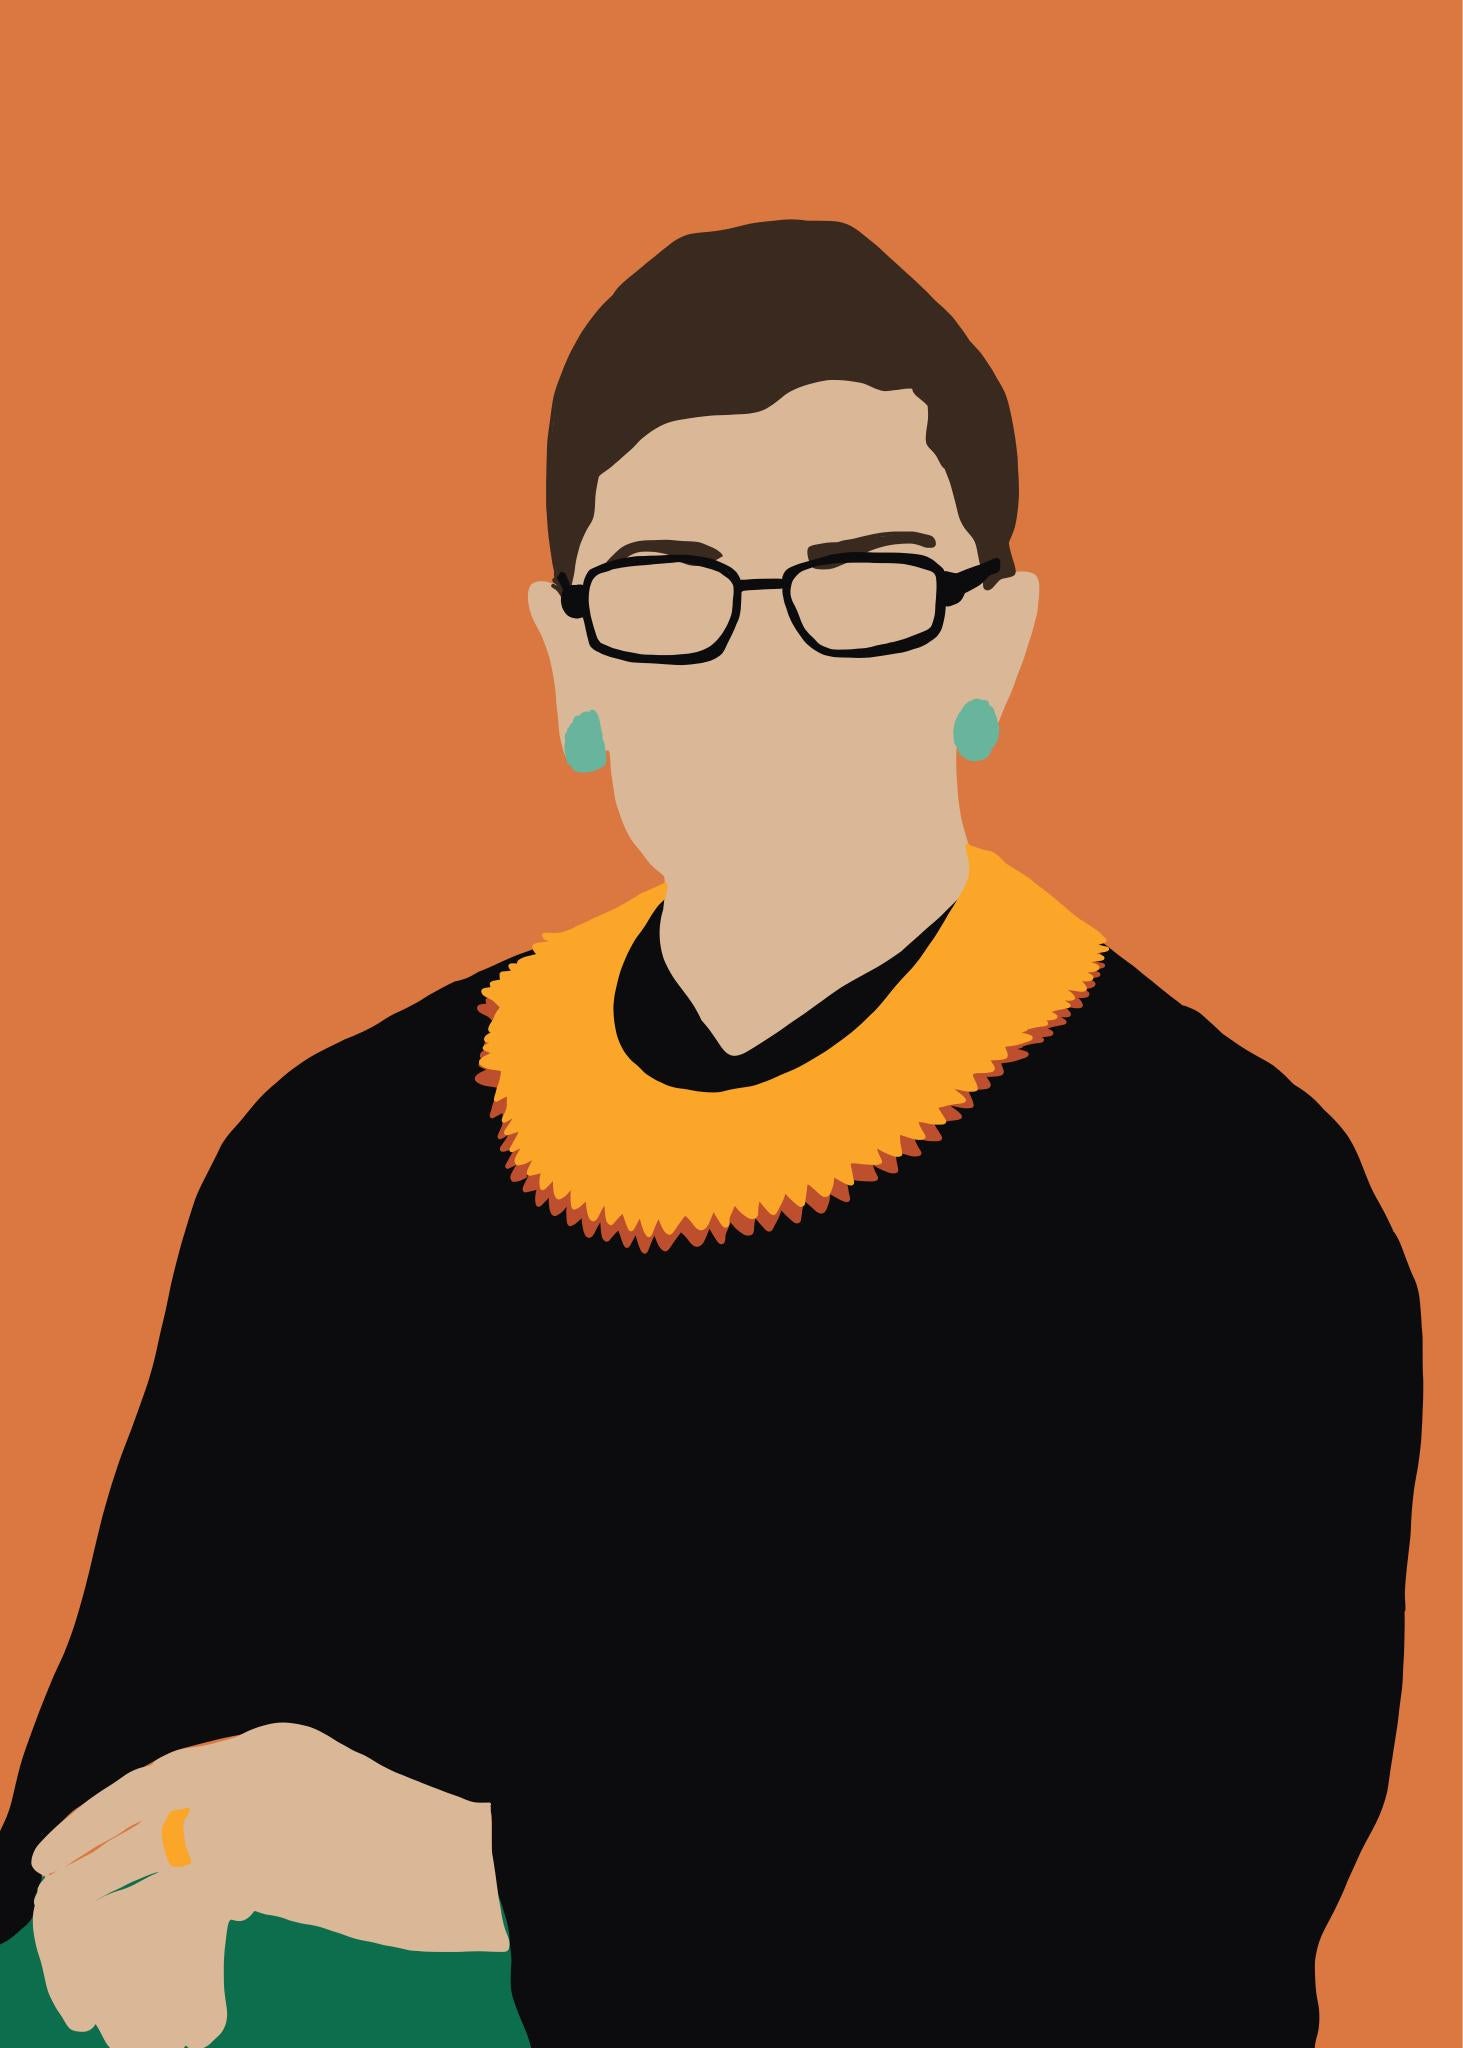 RBG- gerahmtes zeitgenössisches Porträt von Ruth Bader Ginsberg Supreme Court Judge  – Print von Samantha Viotty